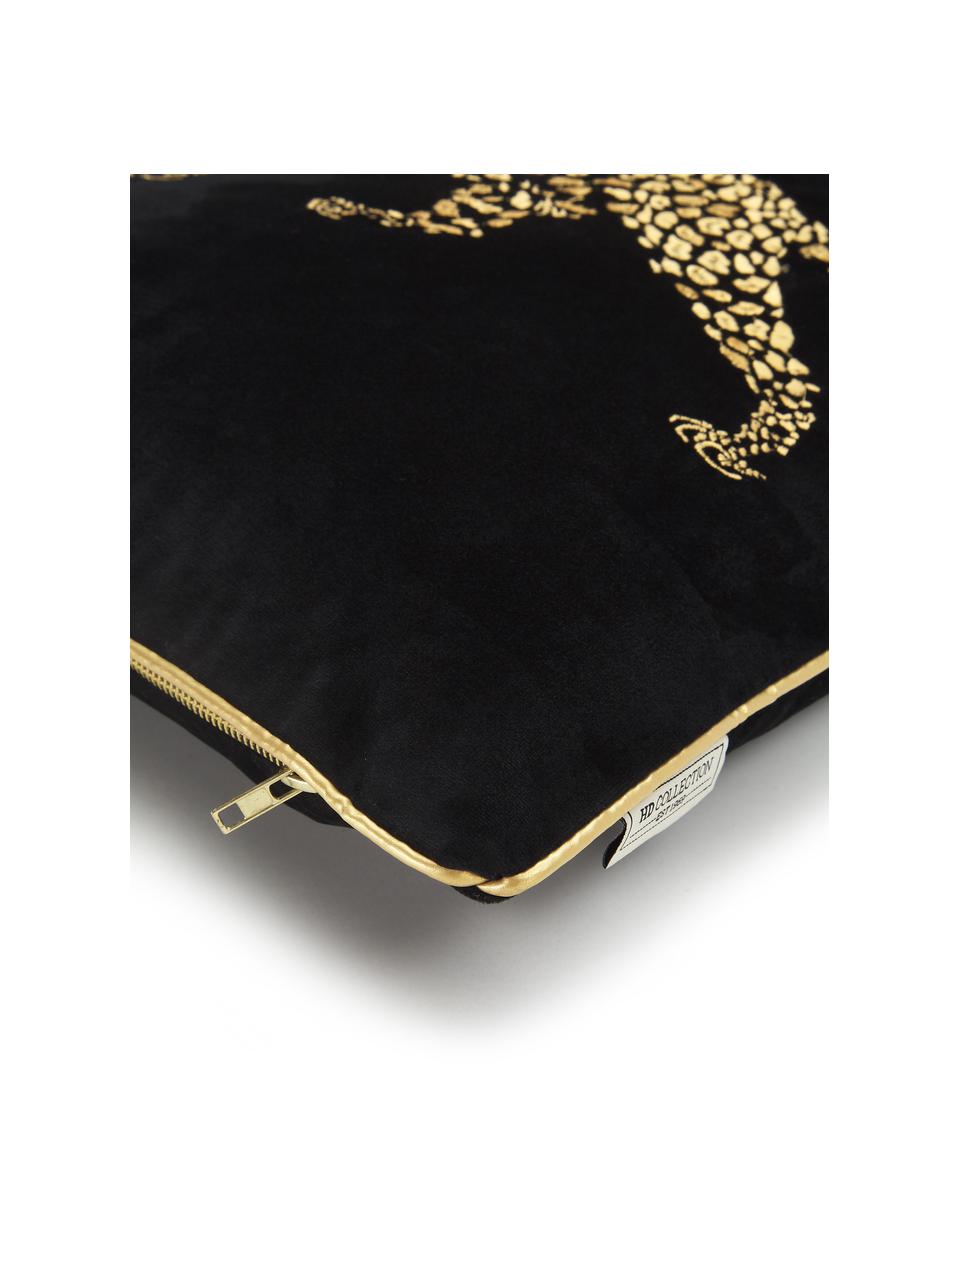 Cuscino con imbottitura in velluto Majestic Leopard, 100% velluto (poliestere), Nero, dorato, Larg. 45 x Lung. 45 cm